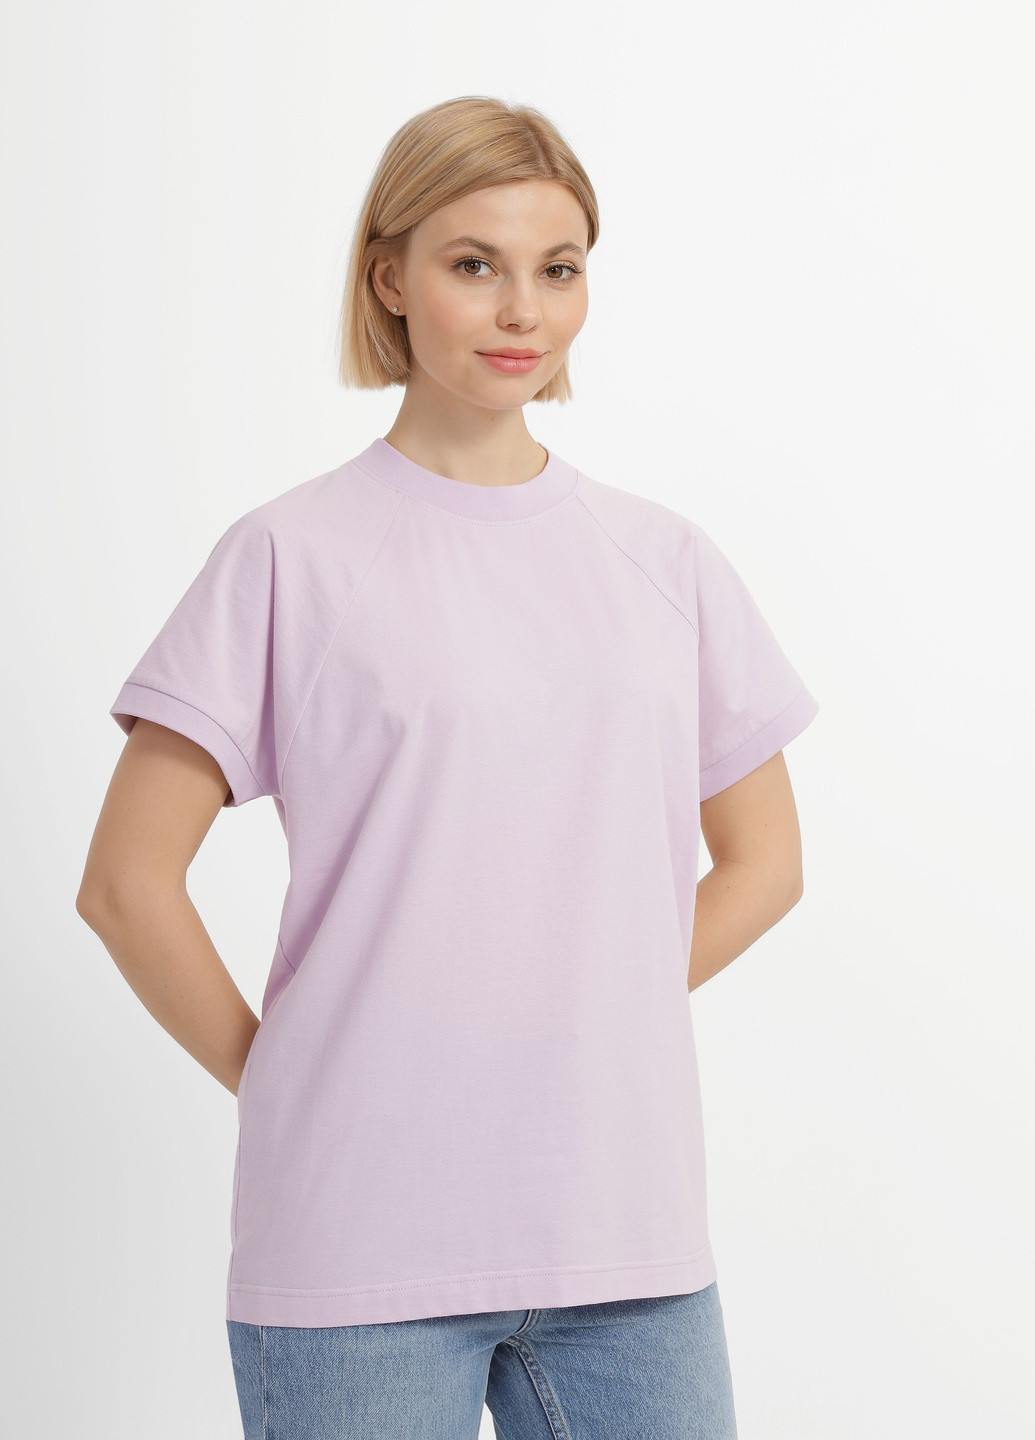 Фиолетовая летняя футболка женская Роза